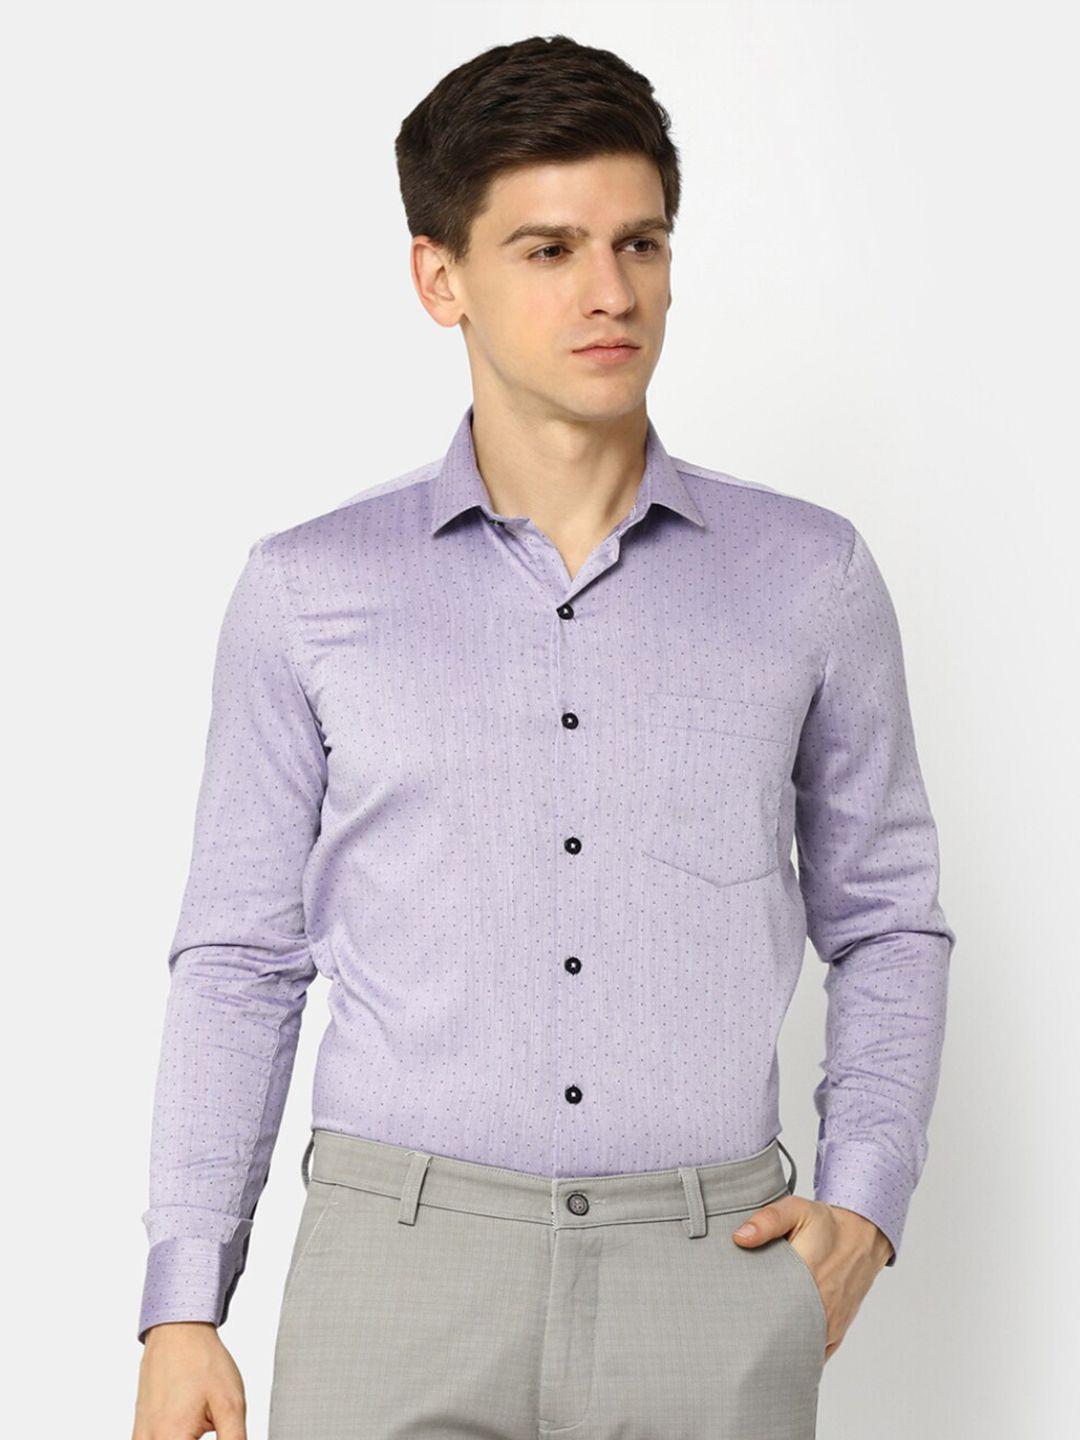 v-mart regular fit micro print spread collar long sleeve pocket cotton formal shirt